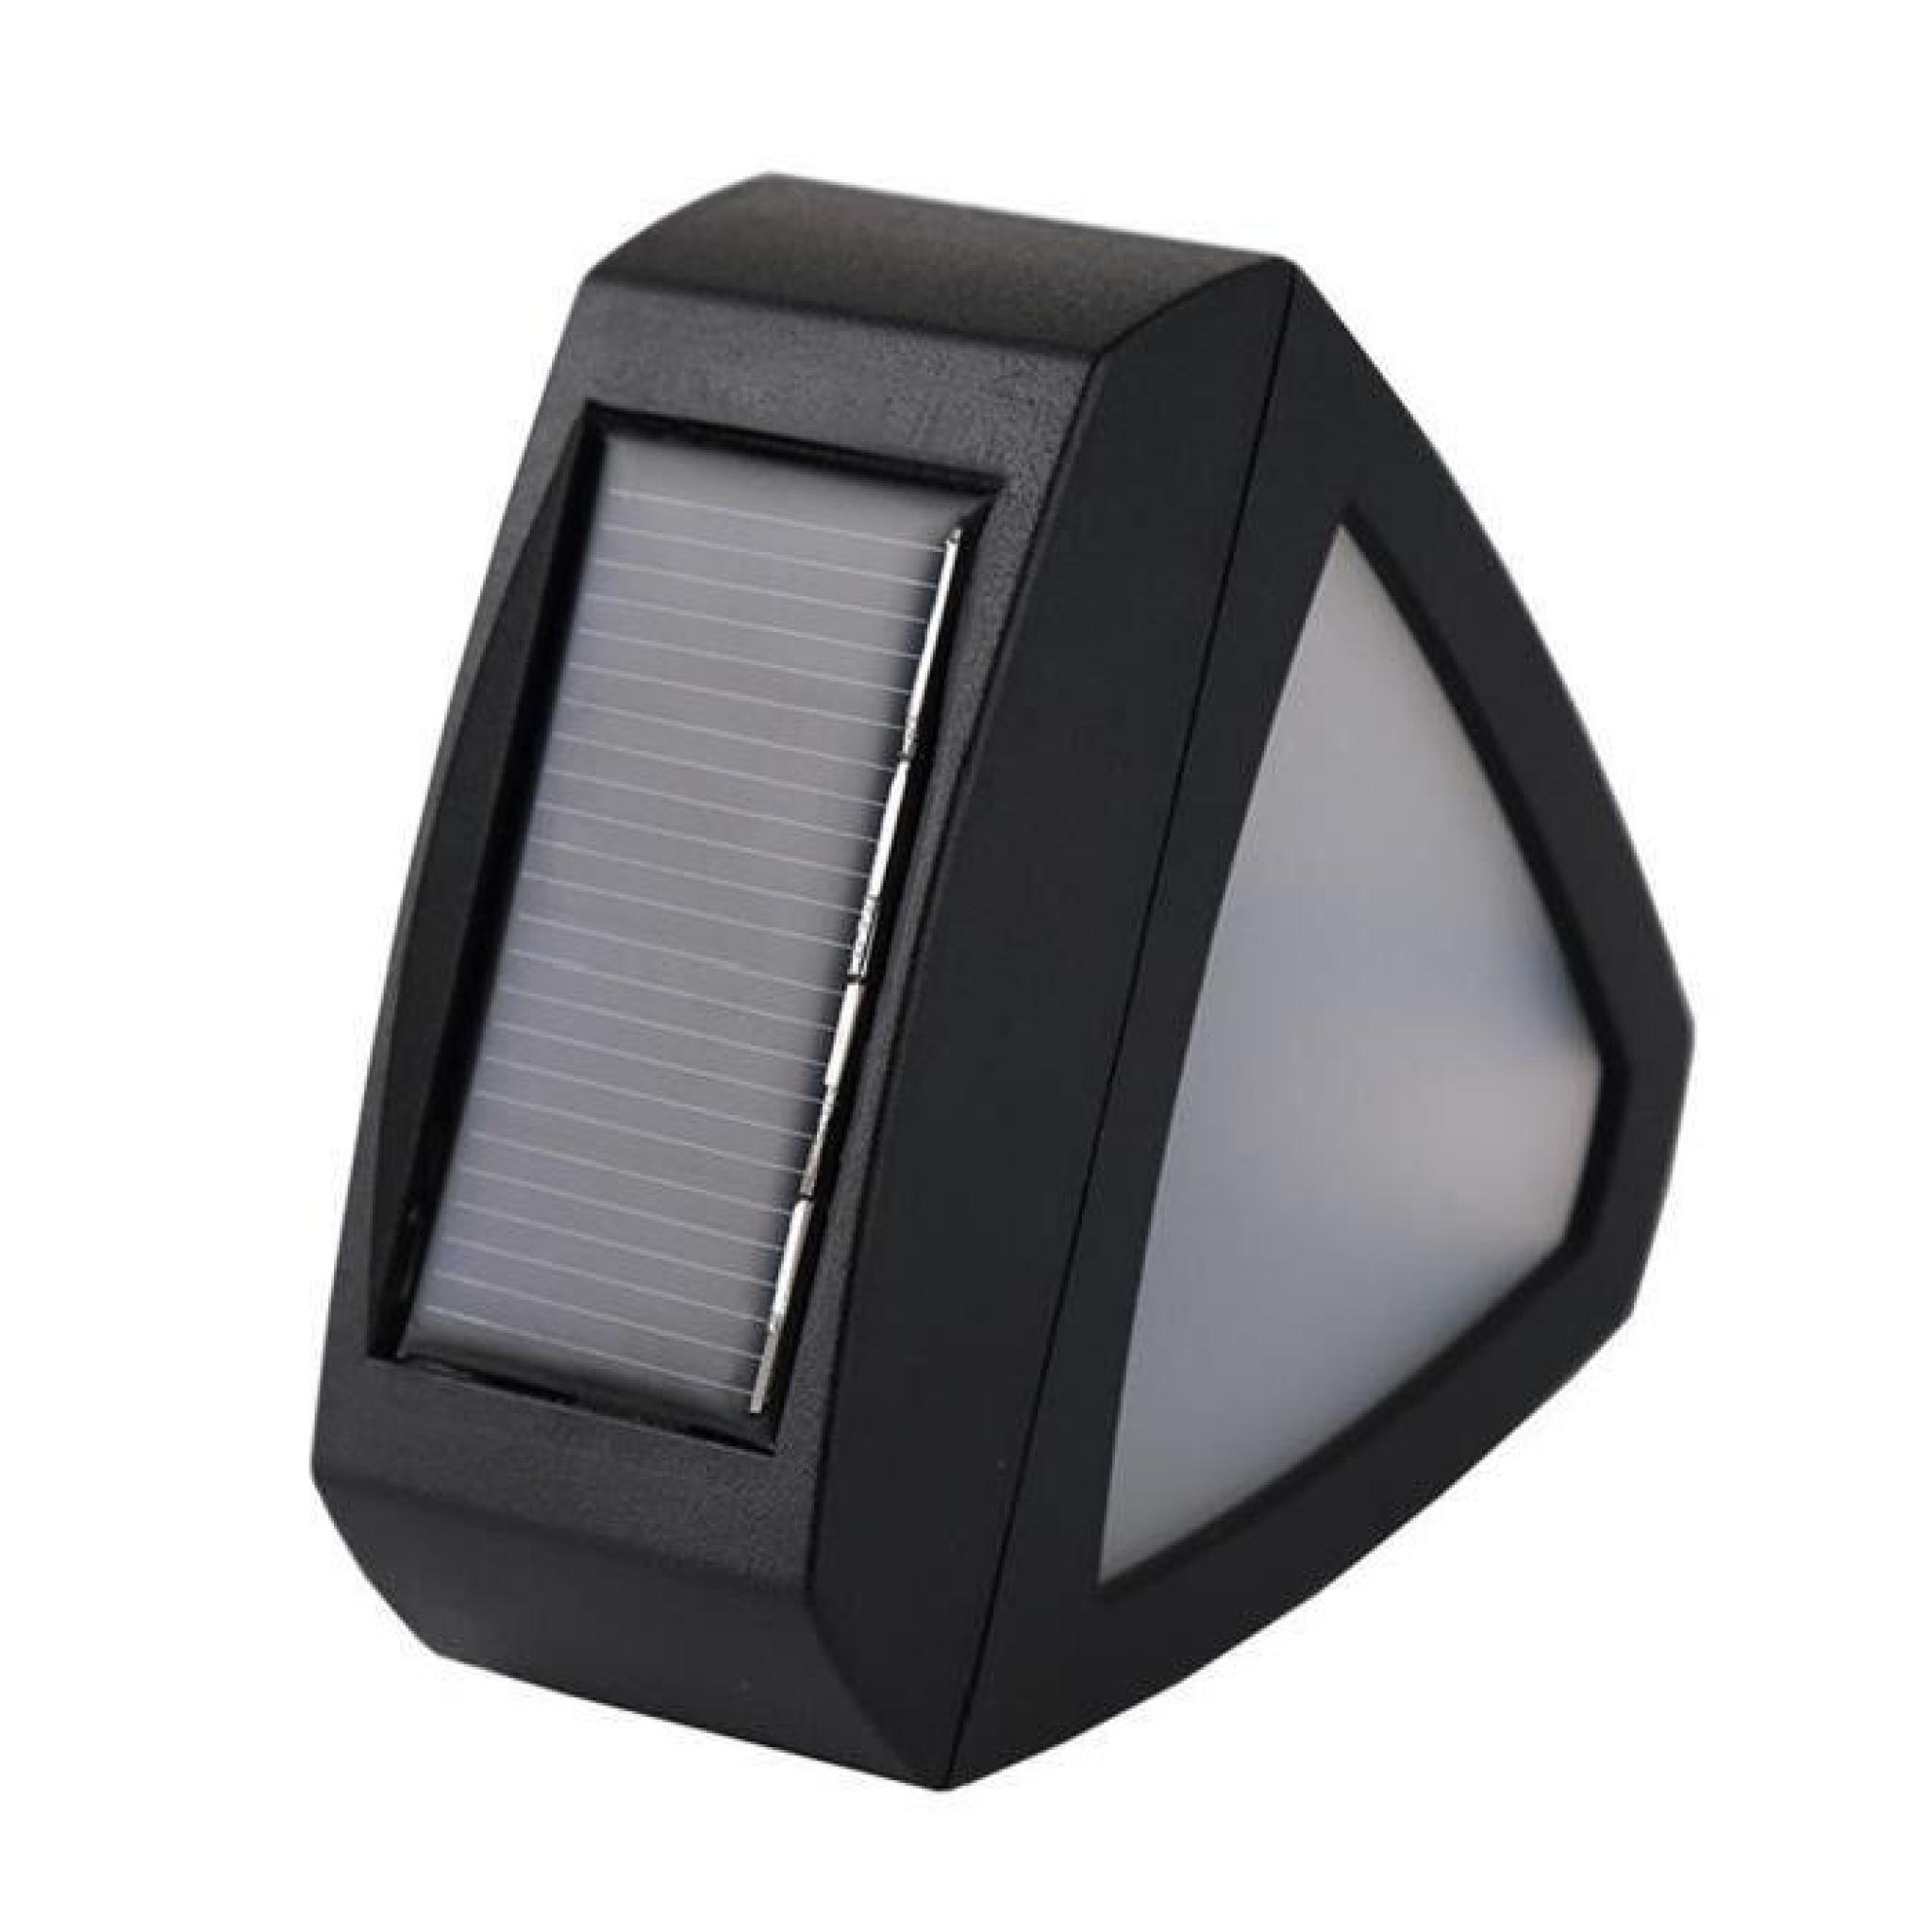 2pcs Lampe Solaire Jardin sous forme de triangle IP44 Certifié étanche 2 LED Soleil Luminaire exterieur/ Spot exterieur avec 6-9 heu pas cher